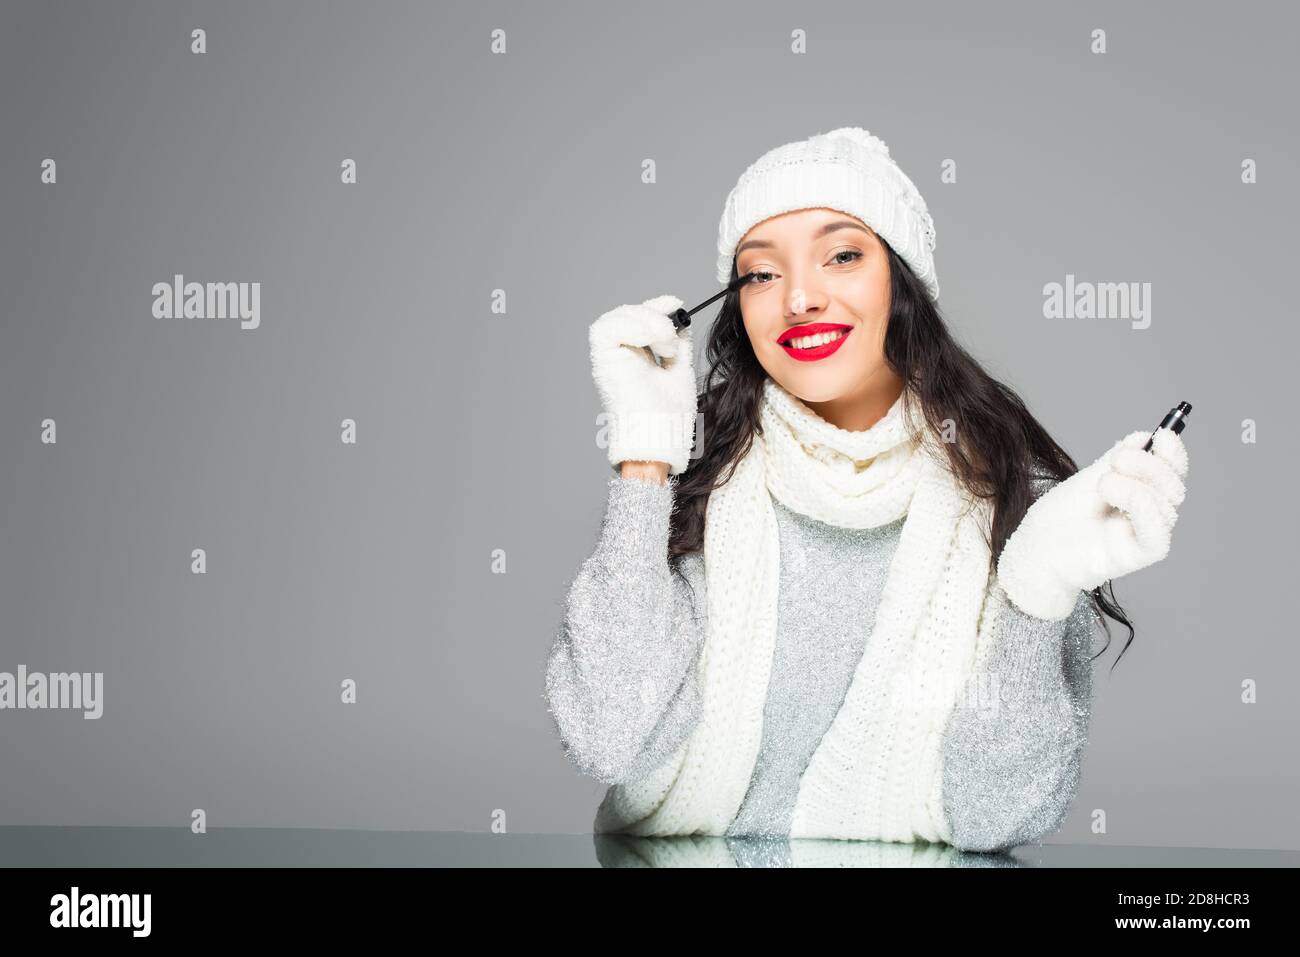 femme heureuse et brune en tenue d'hiver appliquant la mascara isolée en gris Banque D'Images